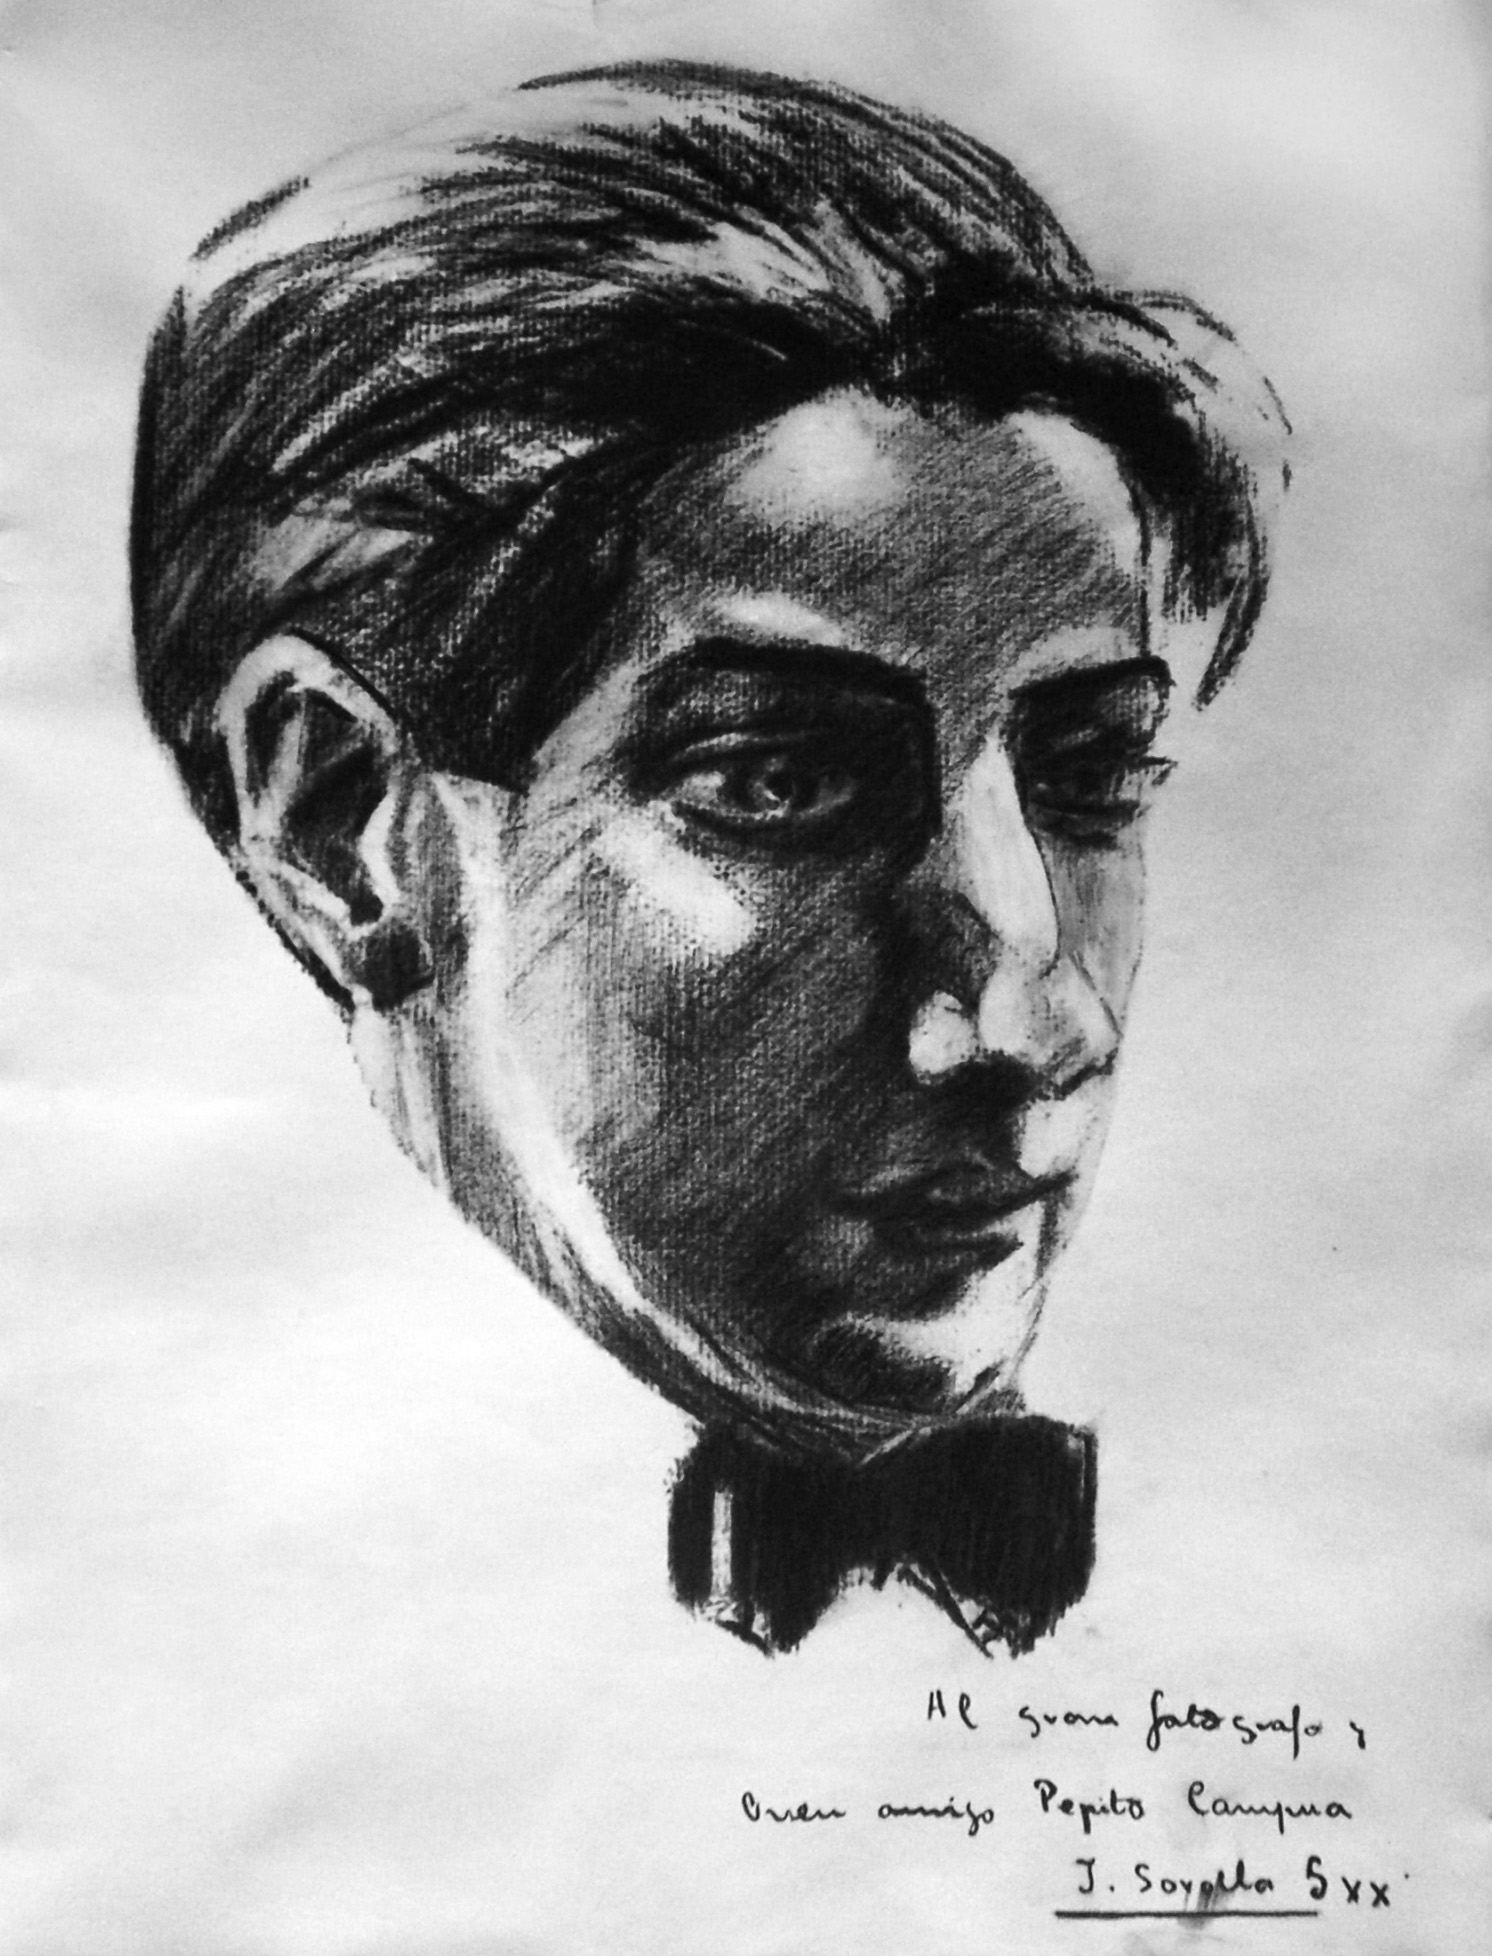 Reproducción de un retrato a carboncillo de José Demaría Vázquez "Campúa" atribuido al hijo de Joaquín Sorolla.